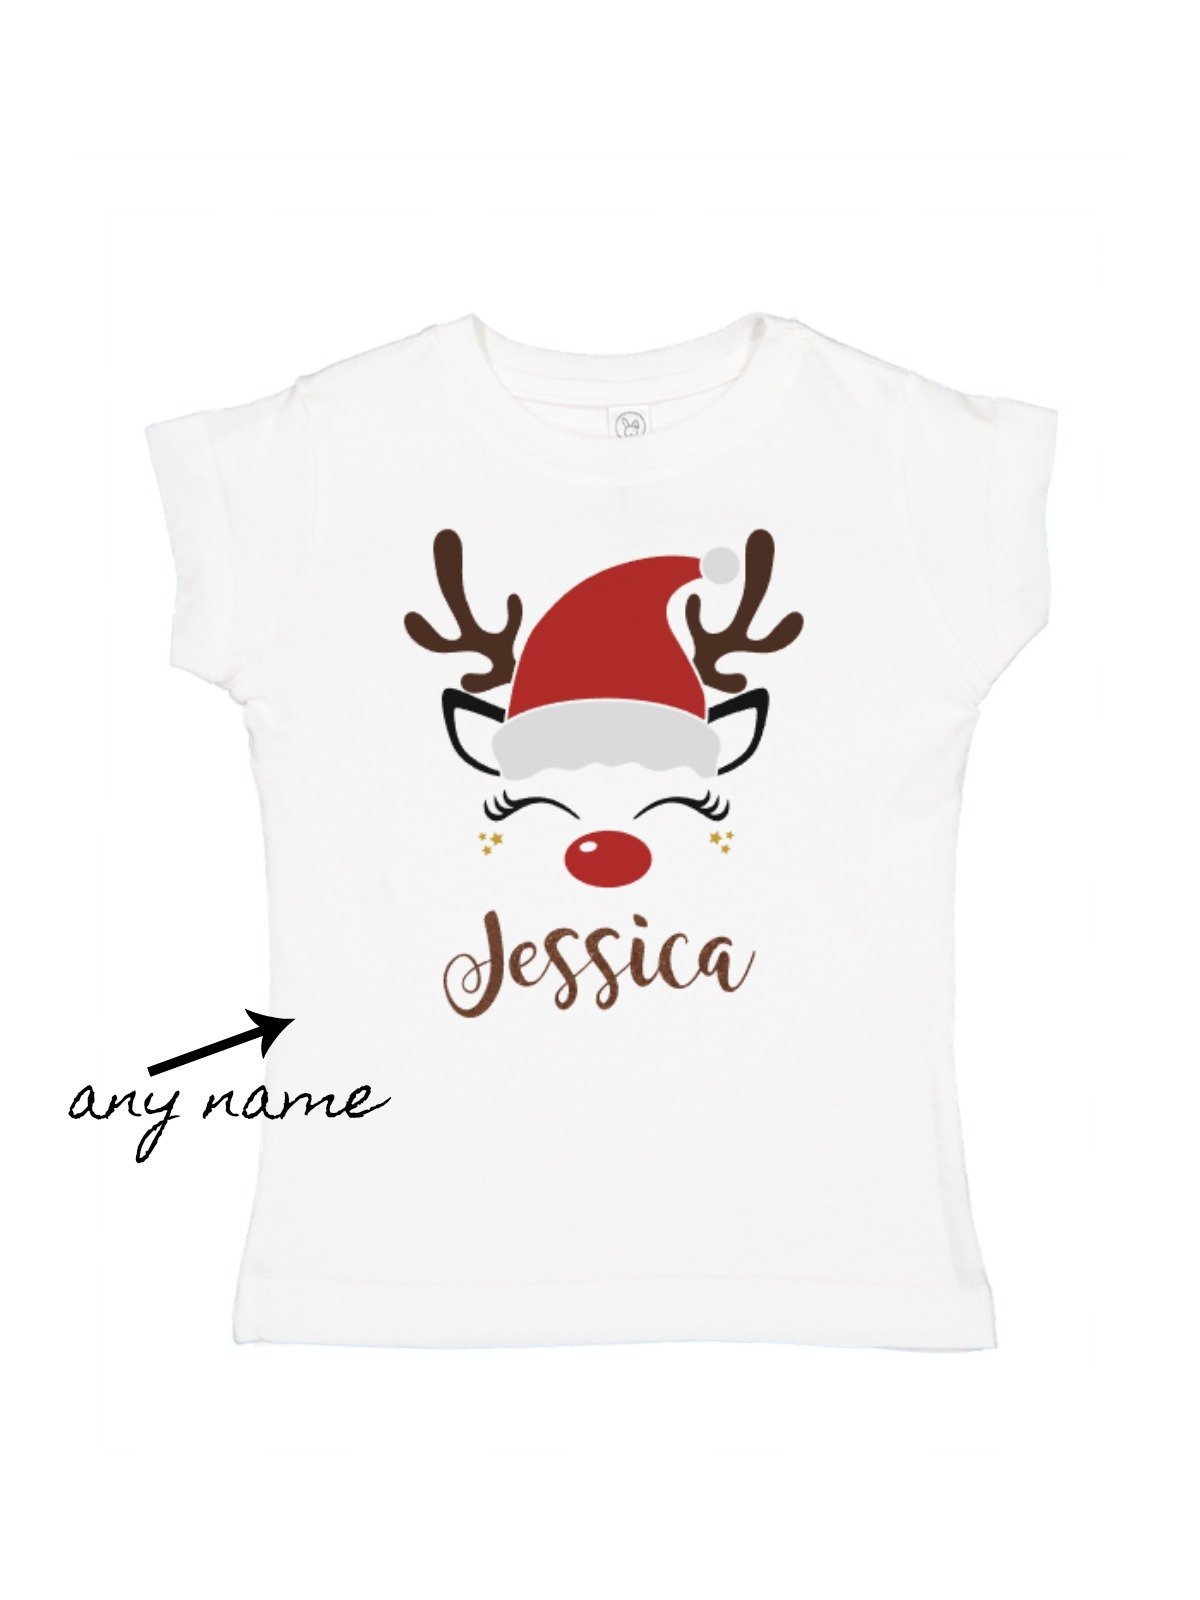 kids personalized Christmas shirts